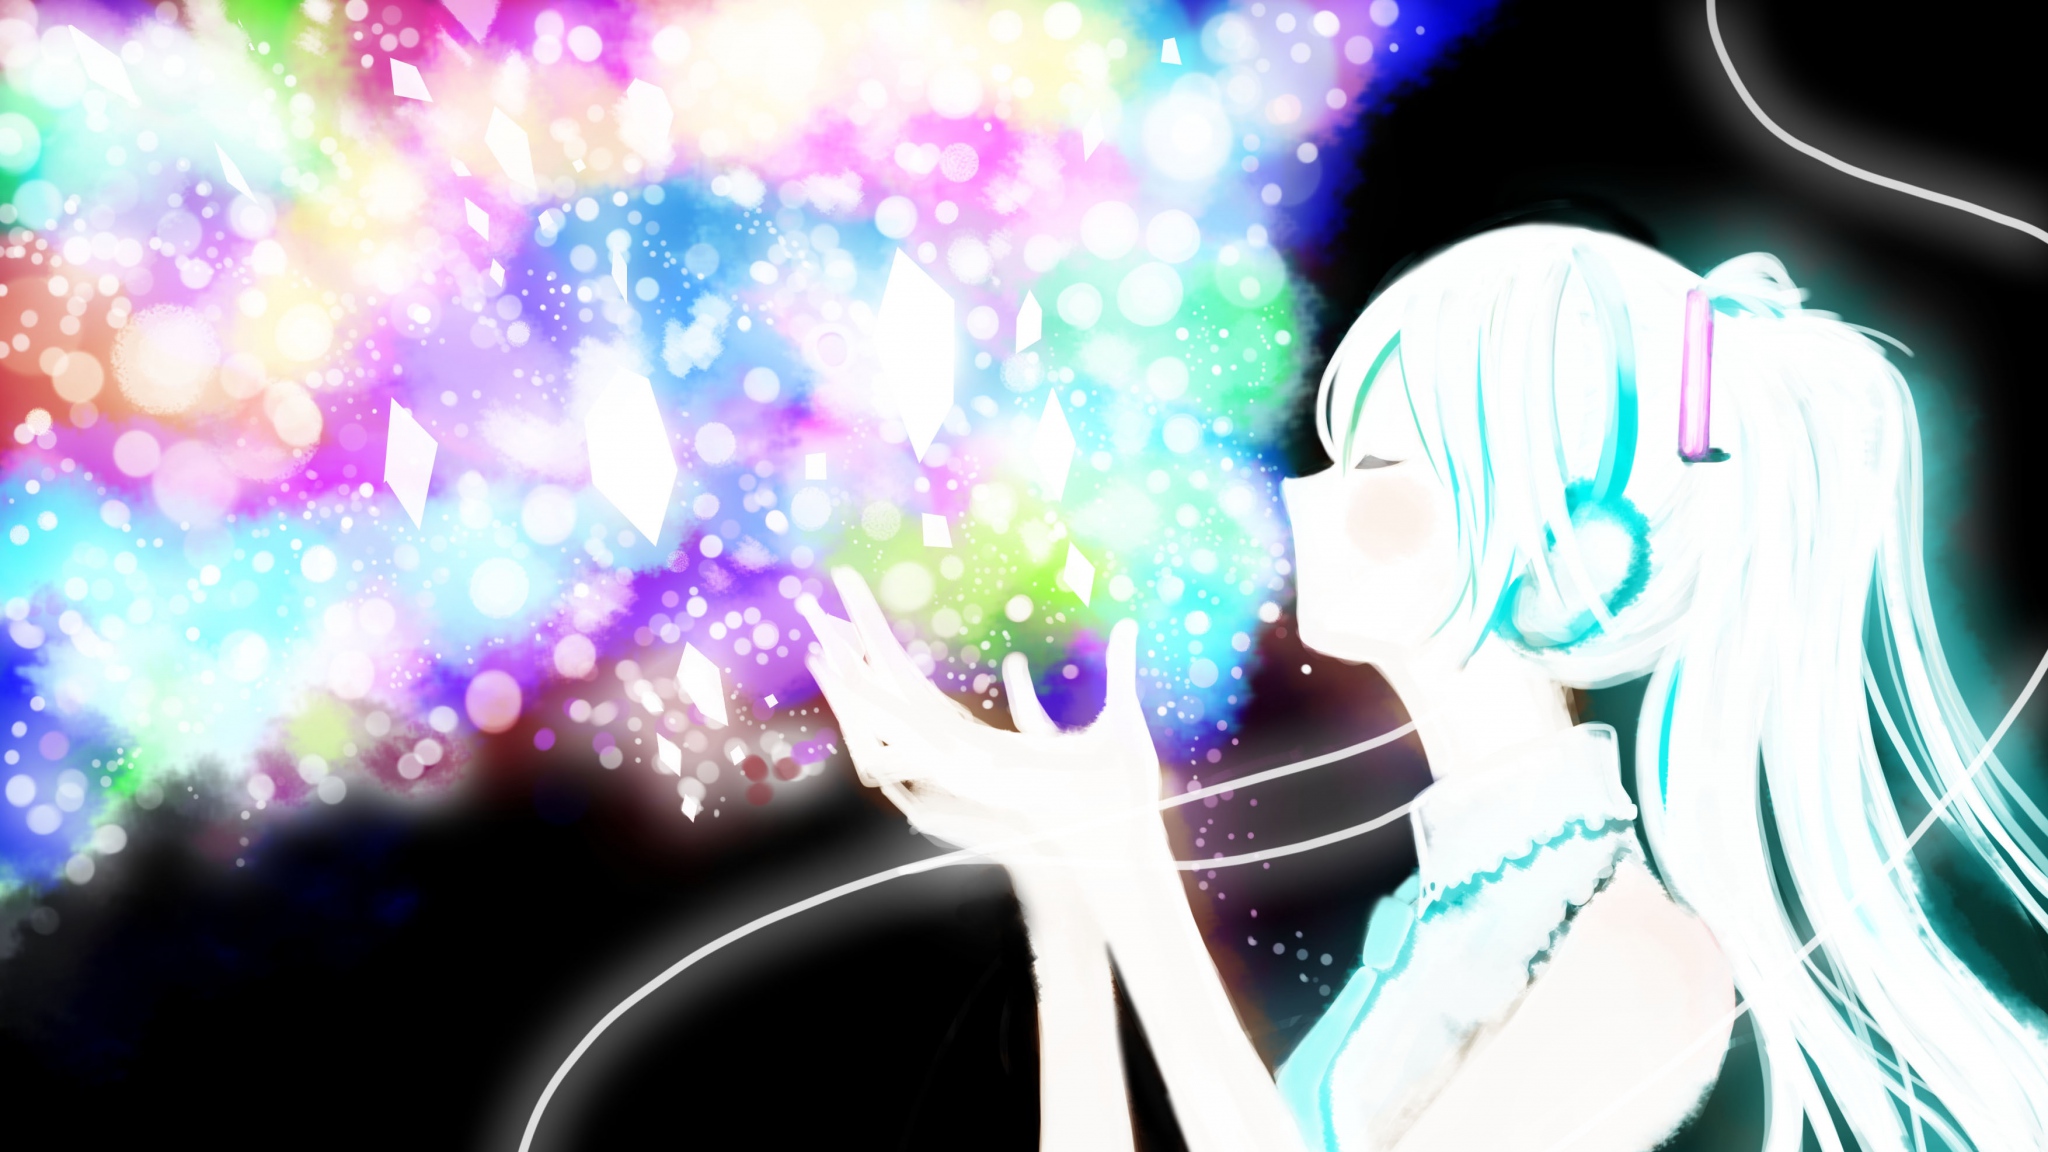 Blue Eyes Anime Girl HQ Desktop Wallpaper 21508 - Baltana